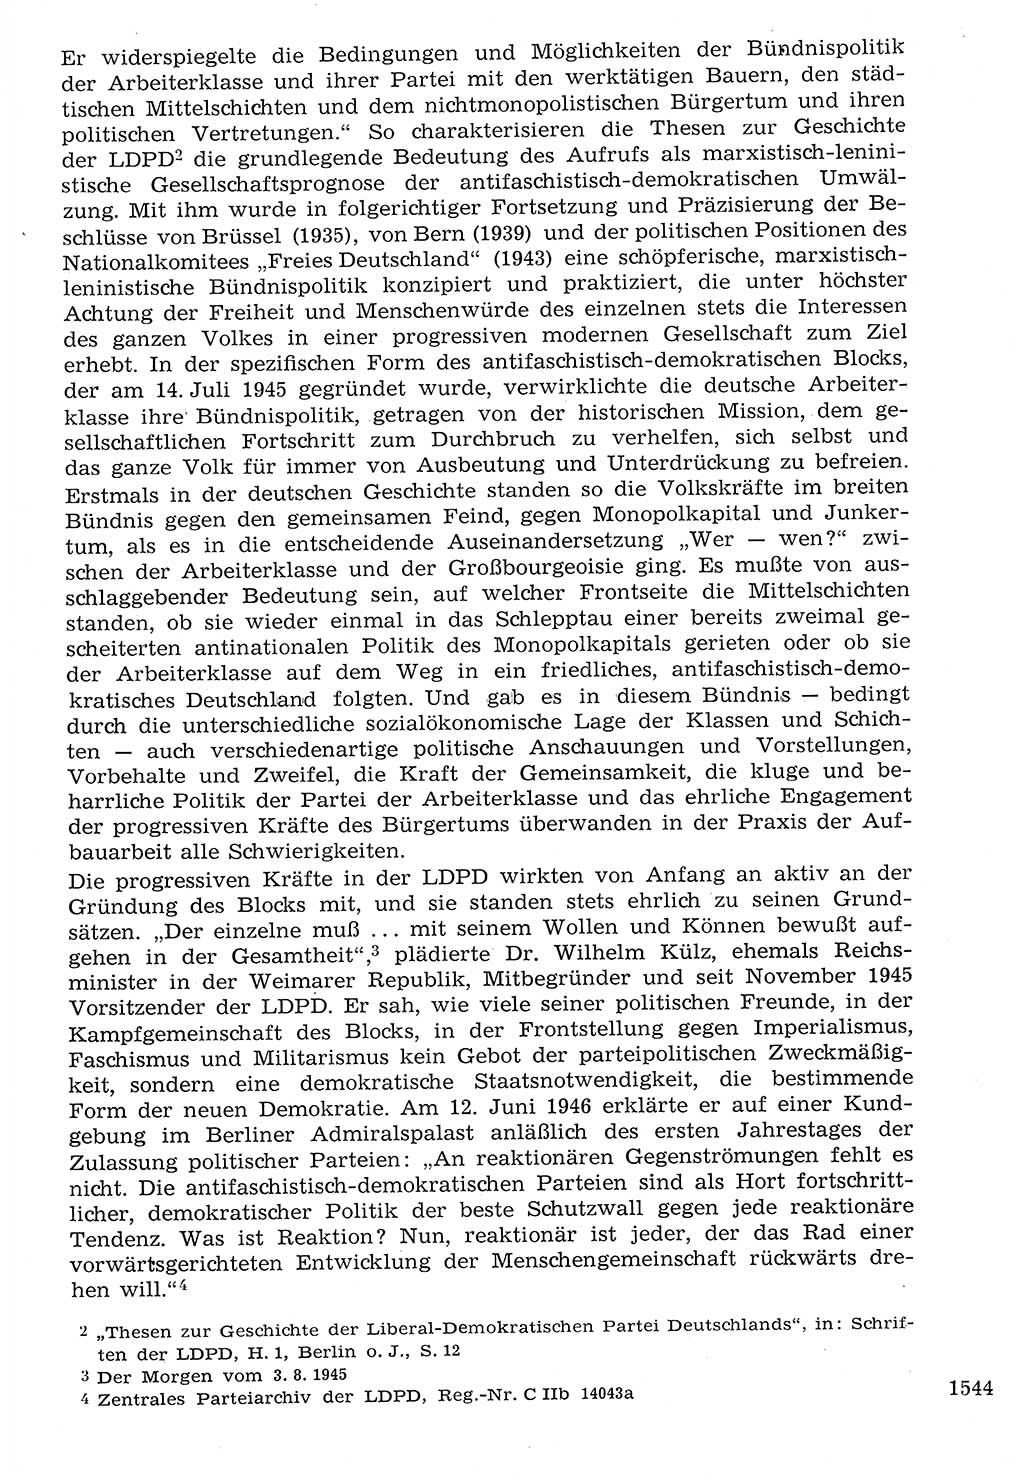 Staat und Recht (StuR), 17. Jahrgang [Deutsche Demokratische Republik (DDR)] 1968, Seite 1544 (StuR DDR 1968, S. 1544)